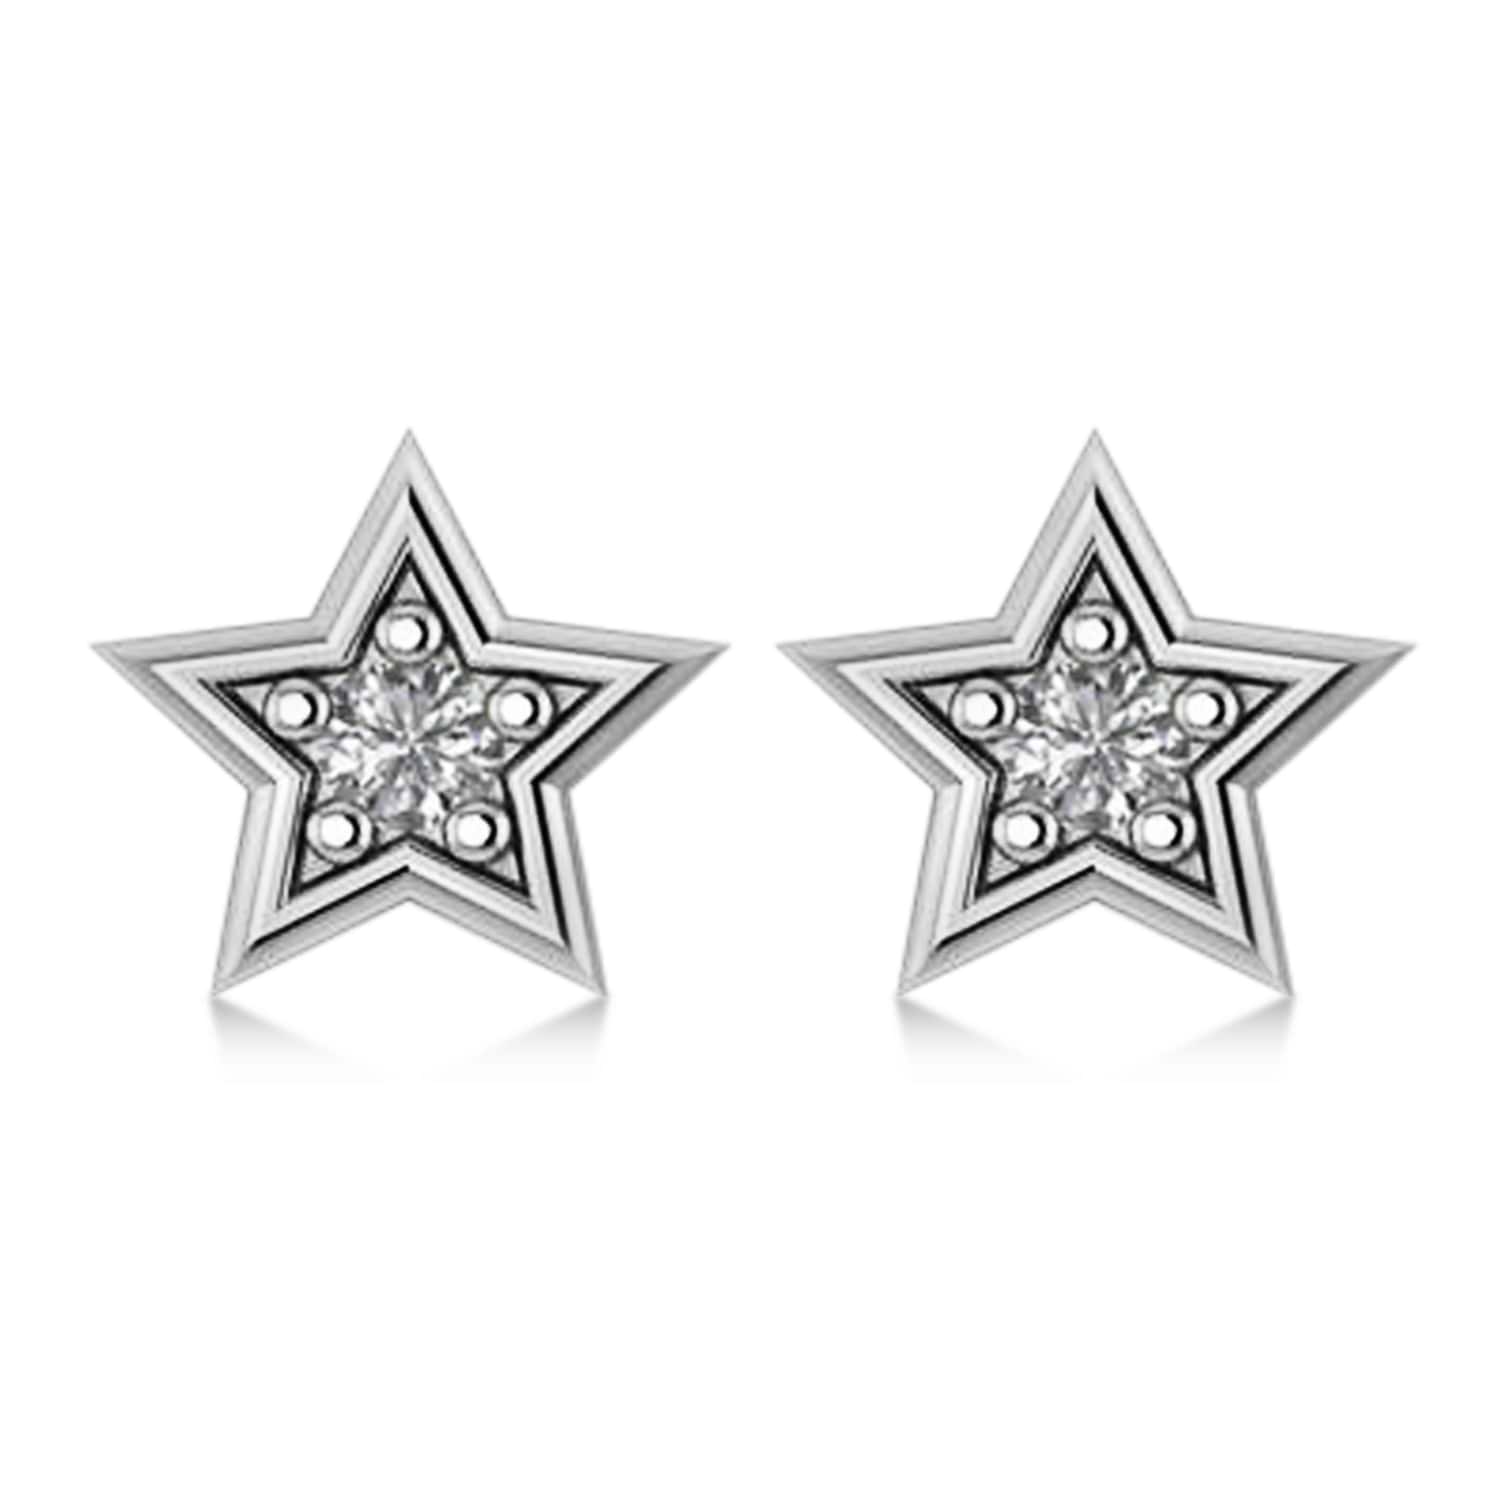 Diamond Stars Earrings 14k White Gold (0.10 ct)